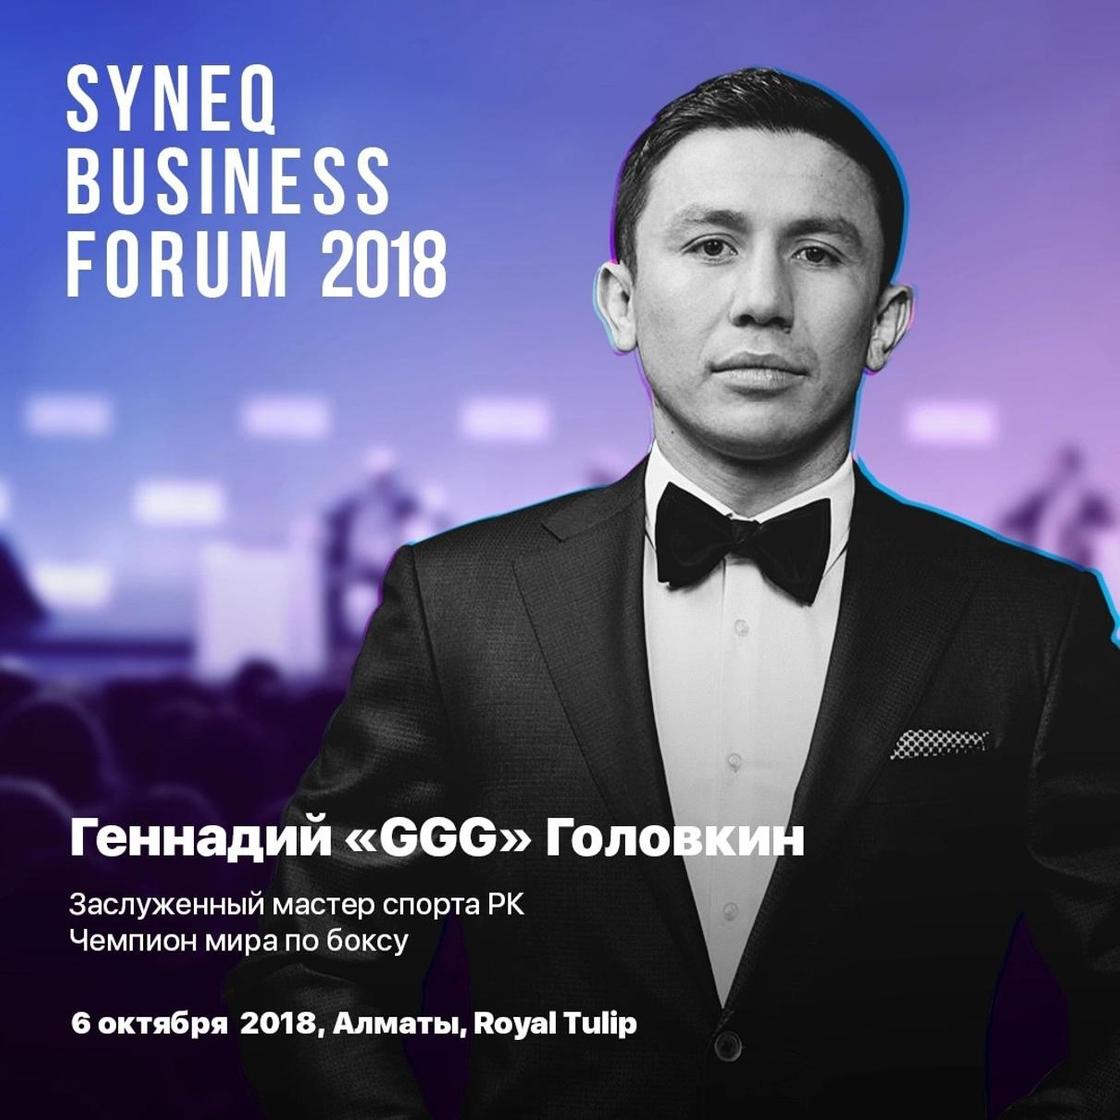 Наш чемпион летит домой: Геннадий Головкин эксклюзивно выступит на Syneq Business Forum 2.0 в Алматы